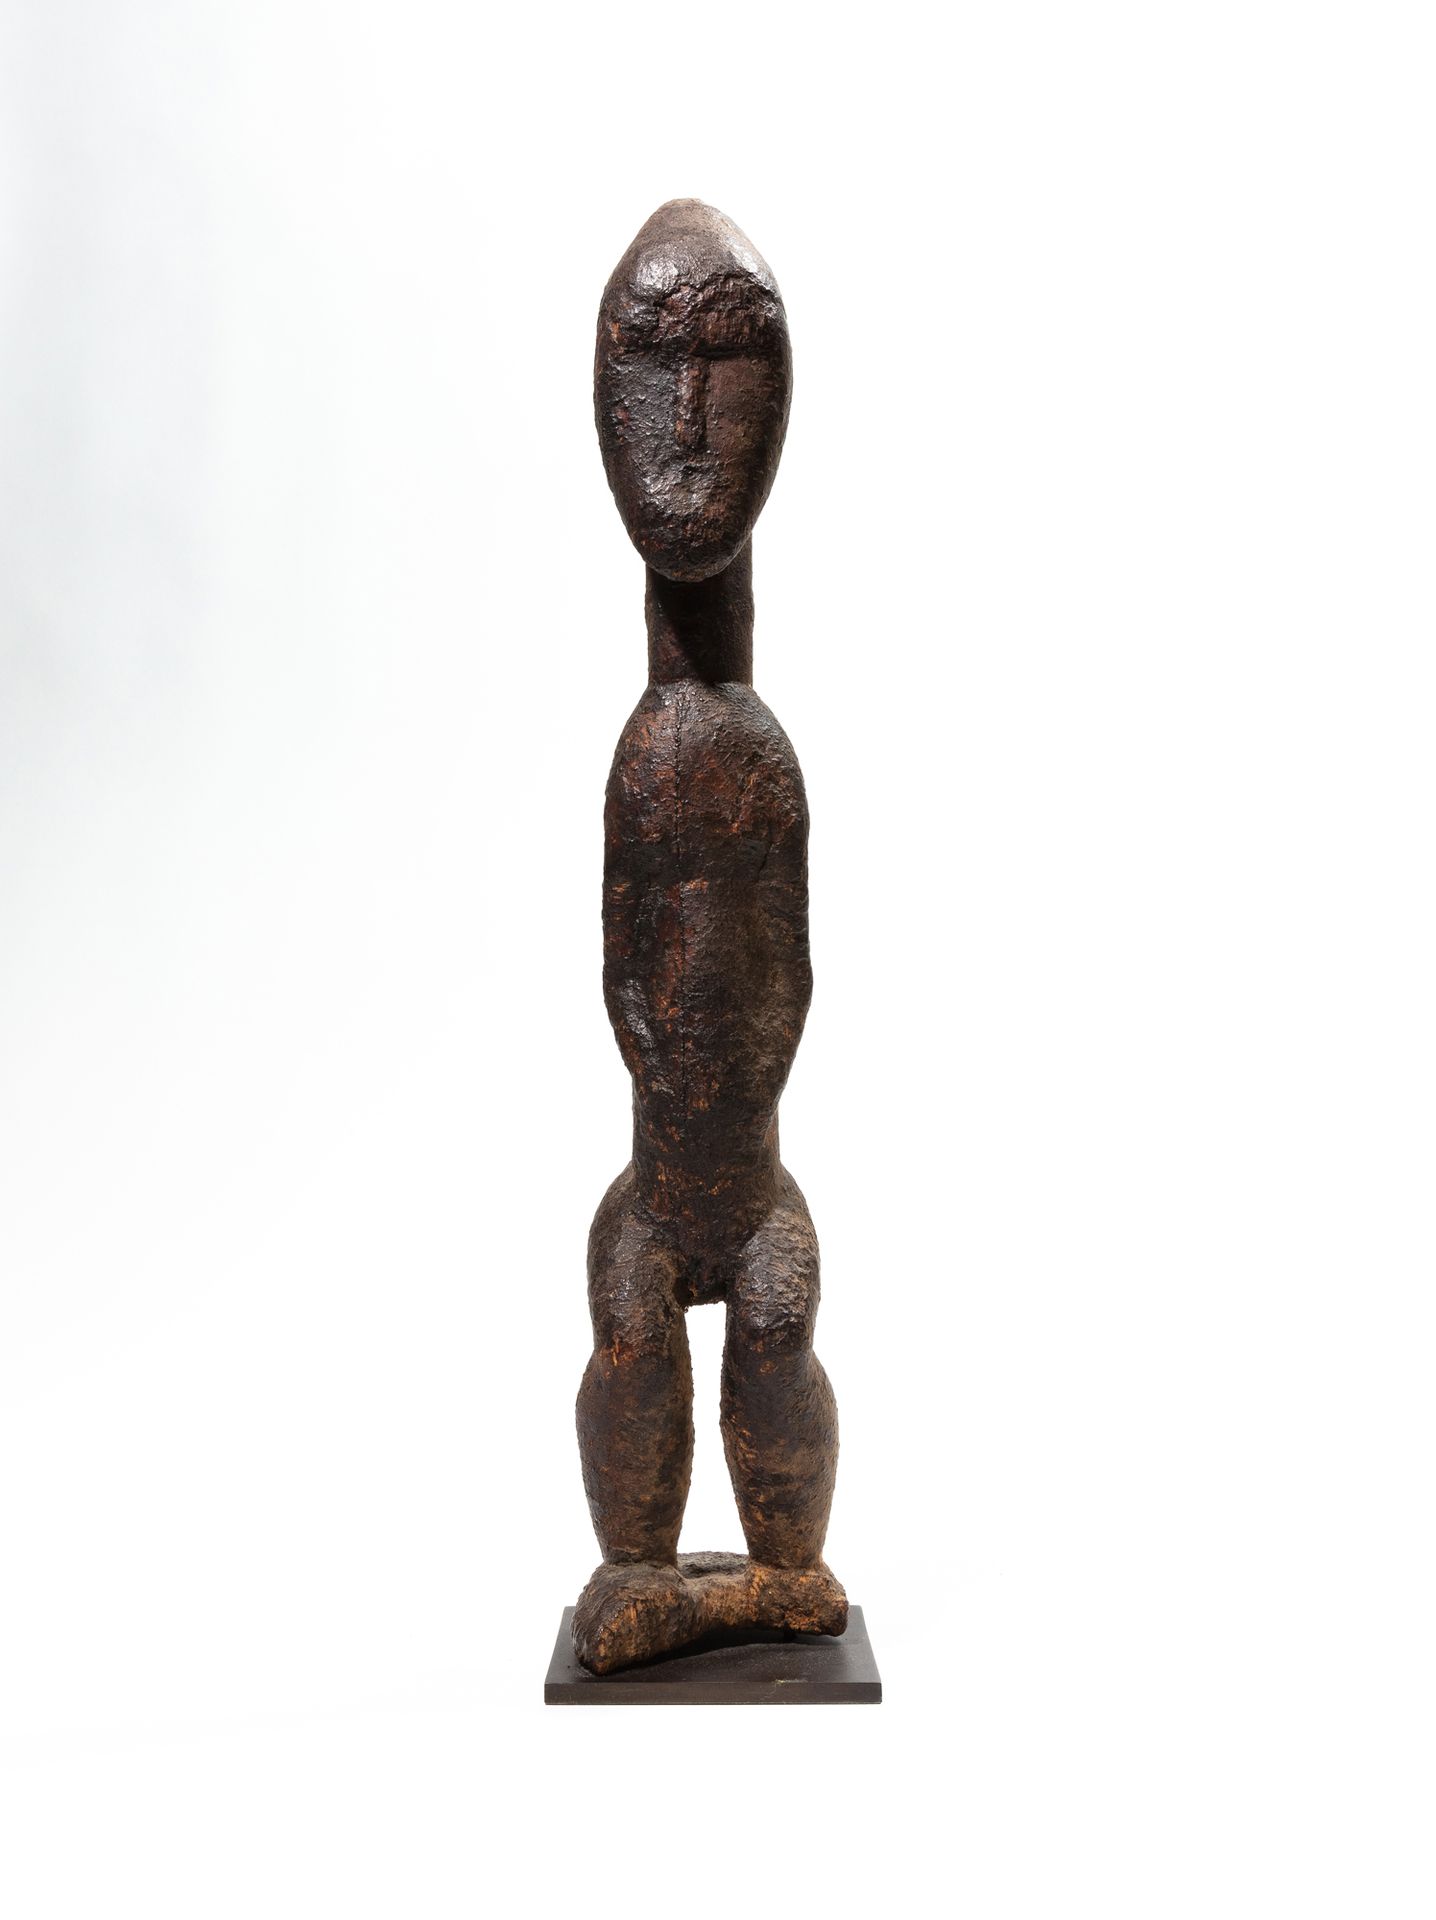 Null 鲍勒雕像，象牙海岸
木头
H.45厘米
男性形象站立，双臂沿身，双腿弯曲，头部过大，卵形的脸部几乎被抹去，整体上覆盖着厚厚的黑色祭祀铜版。这很可能是一&hellip;